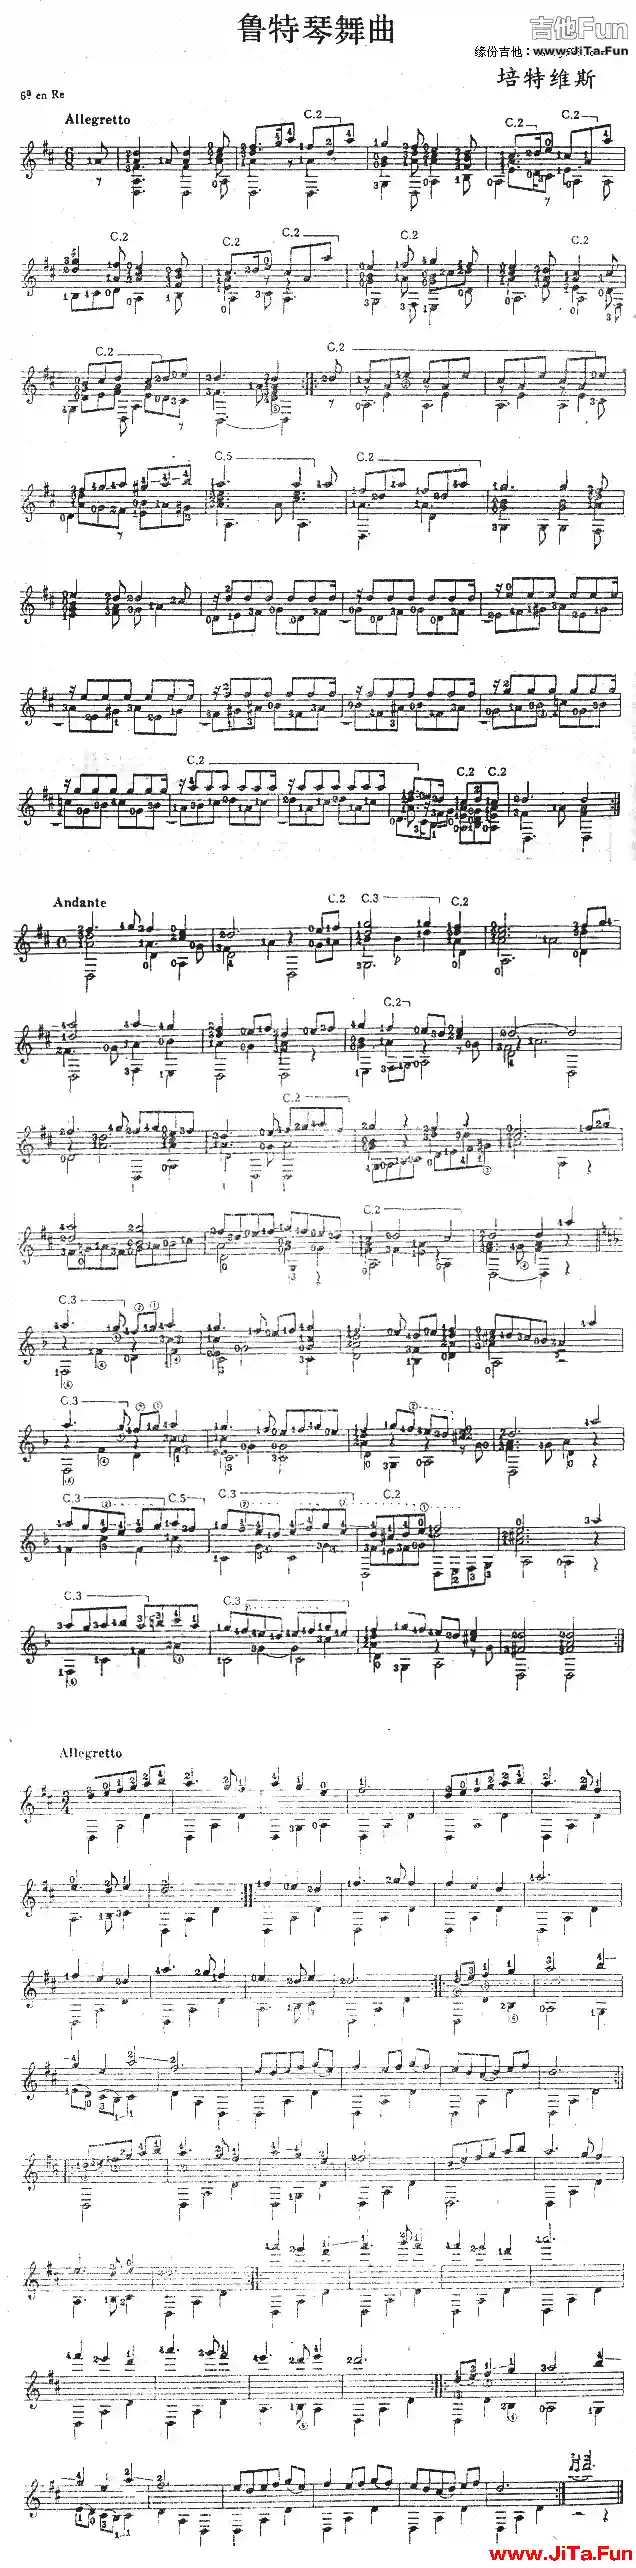 魯特琴舞曲(吉他譜)1